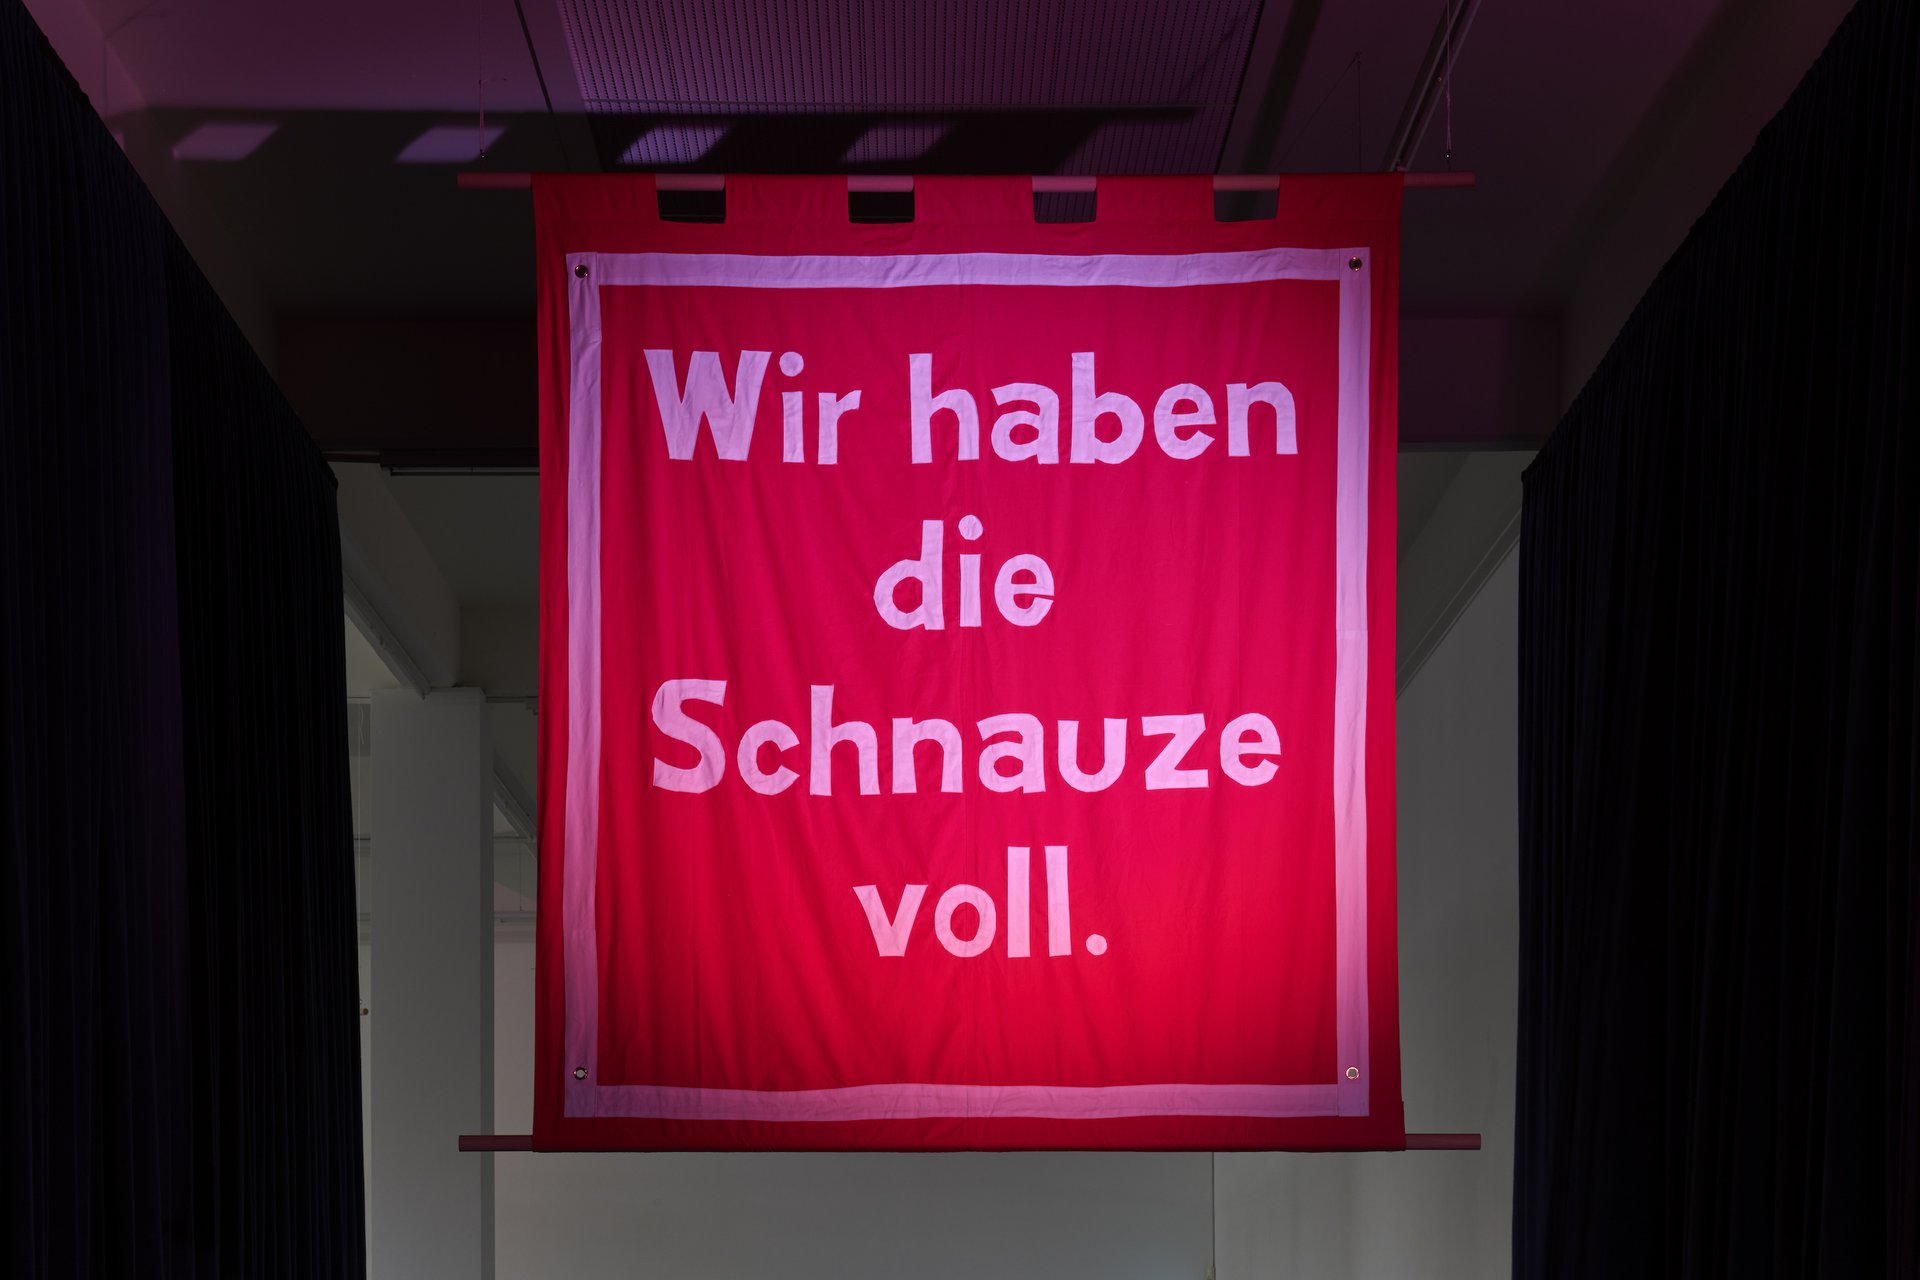 Jeremy Deller: Wir haben die Schnauze voll, installation view, 2020, Bonner Kunstverein, Courtesy the artist and The Modern Institute. Photo: Mareike Tocha